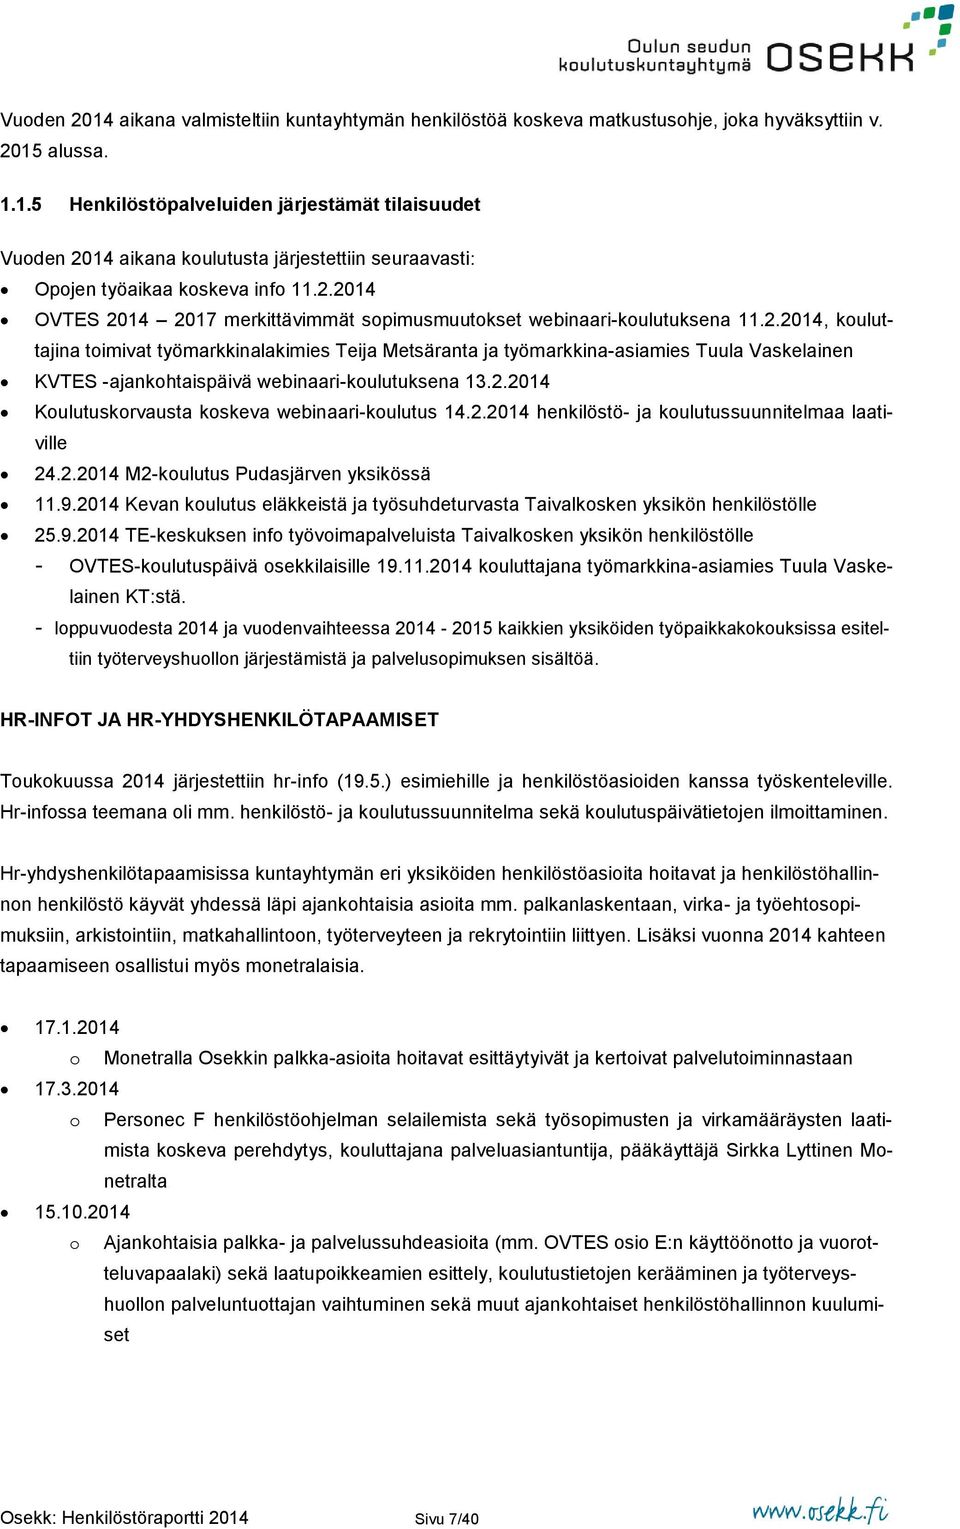 2.2014 Koulutuskorvausta koskeva webinaari-koulutus 14.2.2014 henkilöstö- ja koulutussuunnitelmaa laativille 24.2.2014 M2-koulutus Pudasjärven yksikössä 11.9.